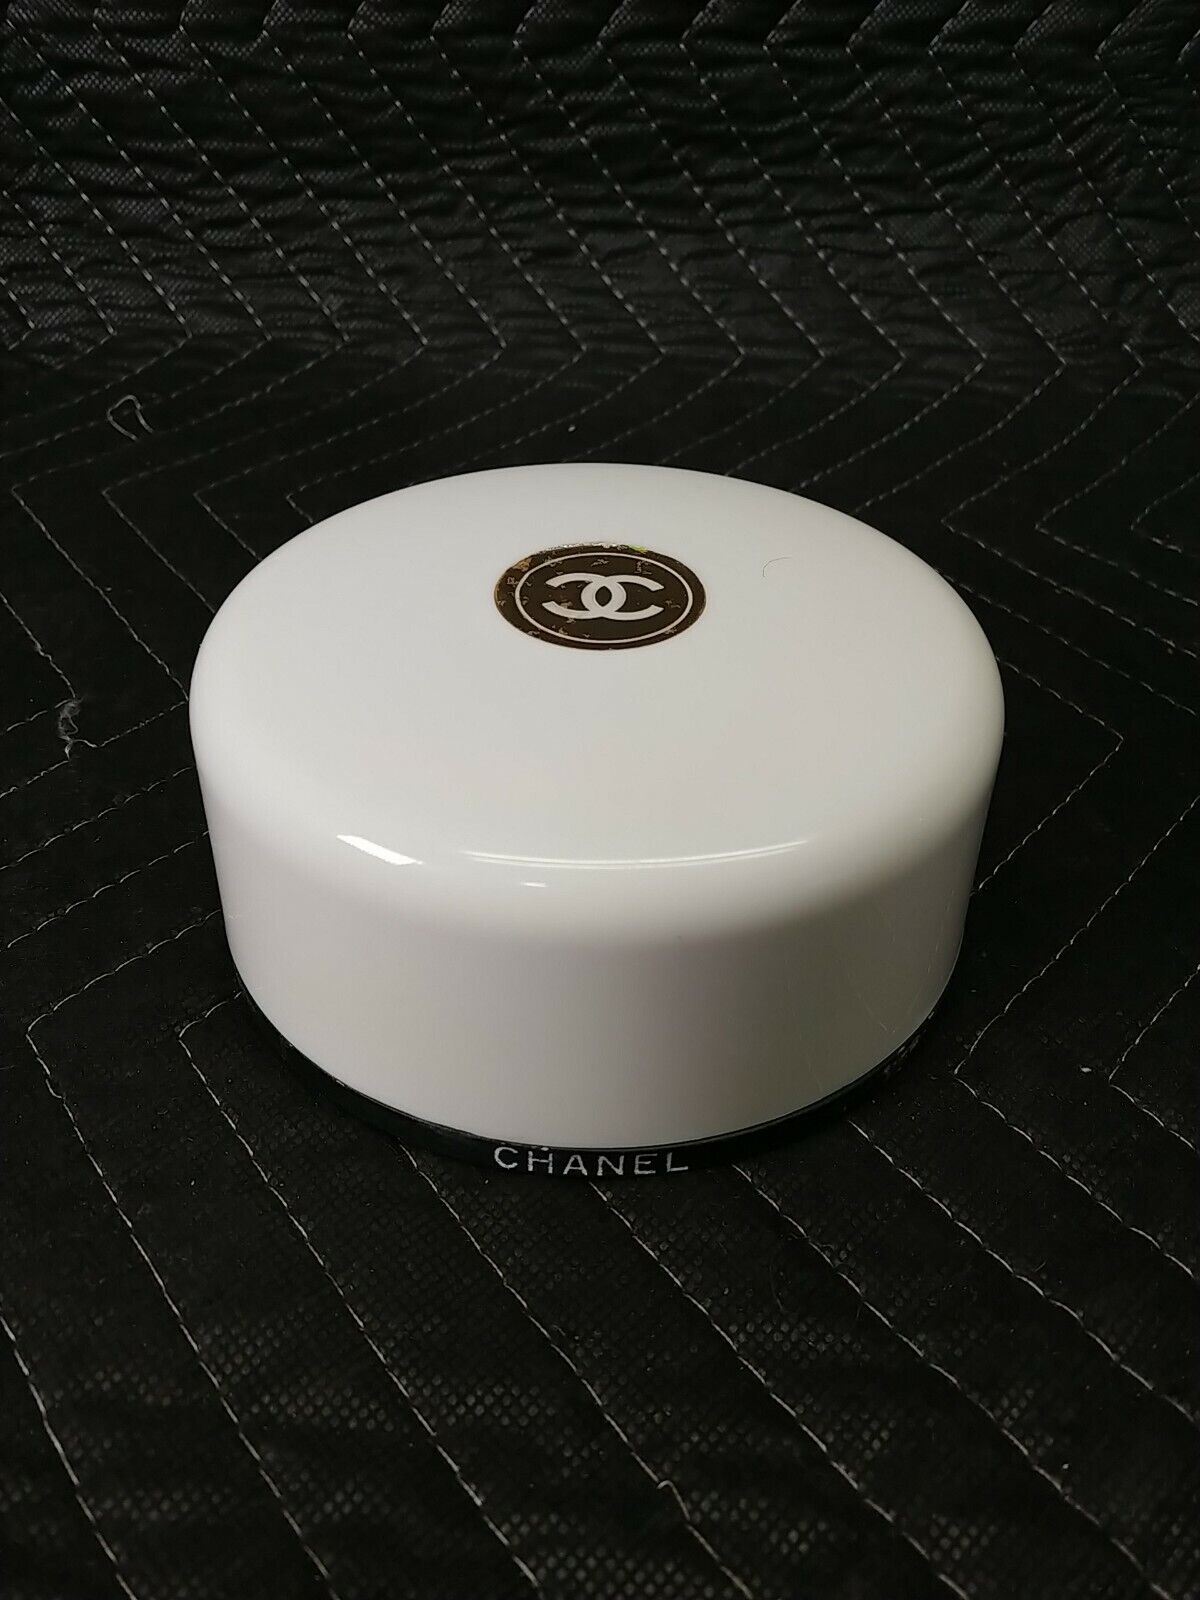 Coco Mademoiselle/Chanel Fresh After Bath Powder 5.0 Oz (150 Ml) (W) 